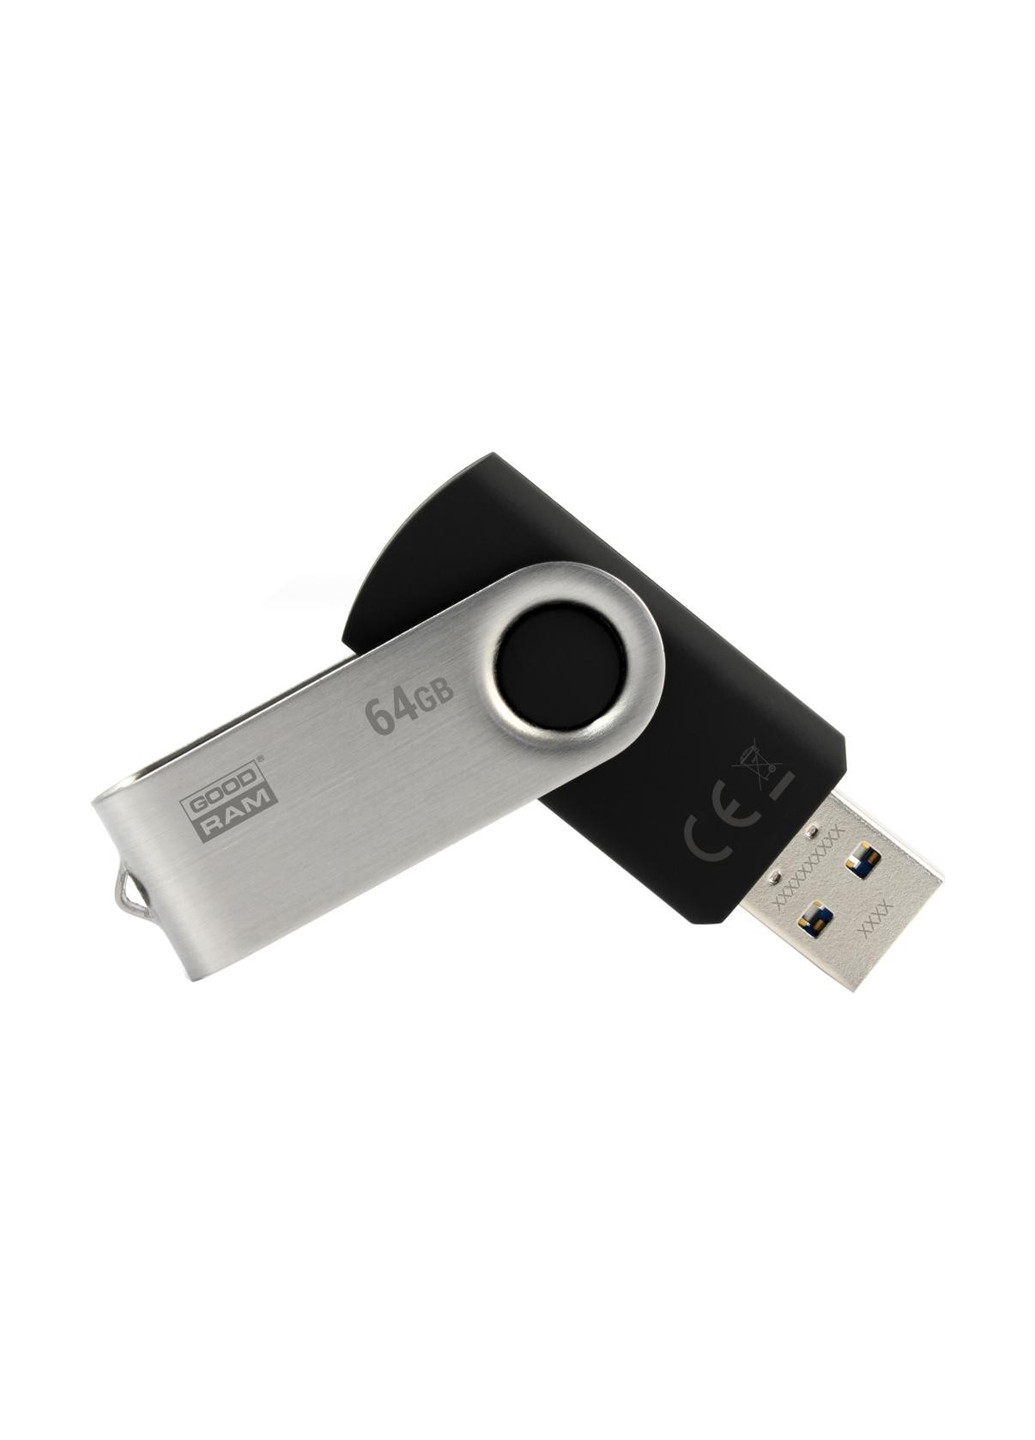 Флеш пам'ять USB 64GB UTS2 USB 2.0 Twister Black (UTS2-0640K0R11) Goodram флеш память usb goodram 64gb uts2 usb 2.0 twister black (uts2-0640k0r11) (136742732)